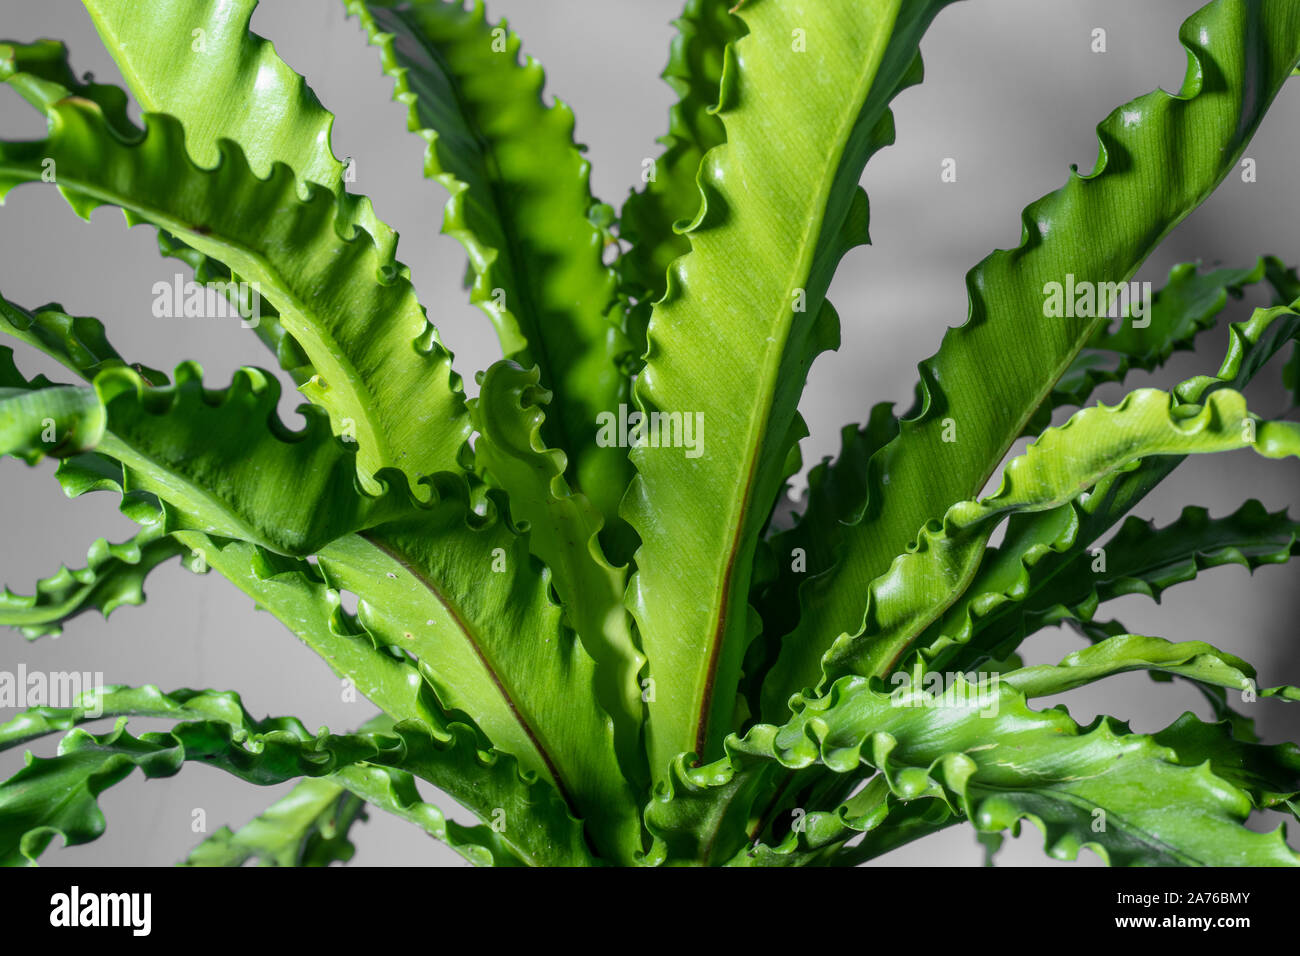 soft focus houseplant Asplenium nidus isolated on background Stock Photo